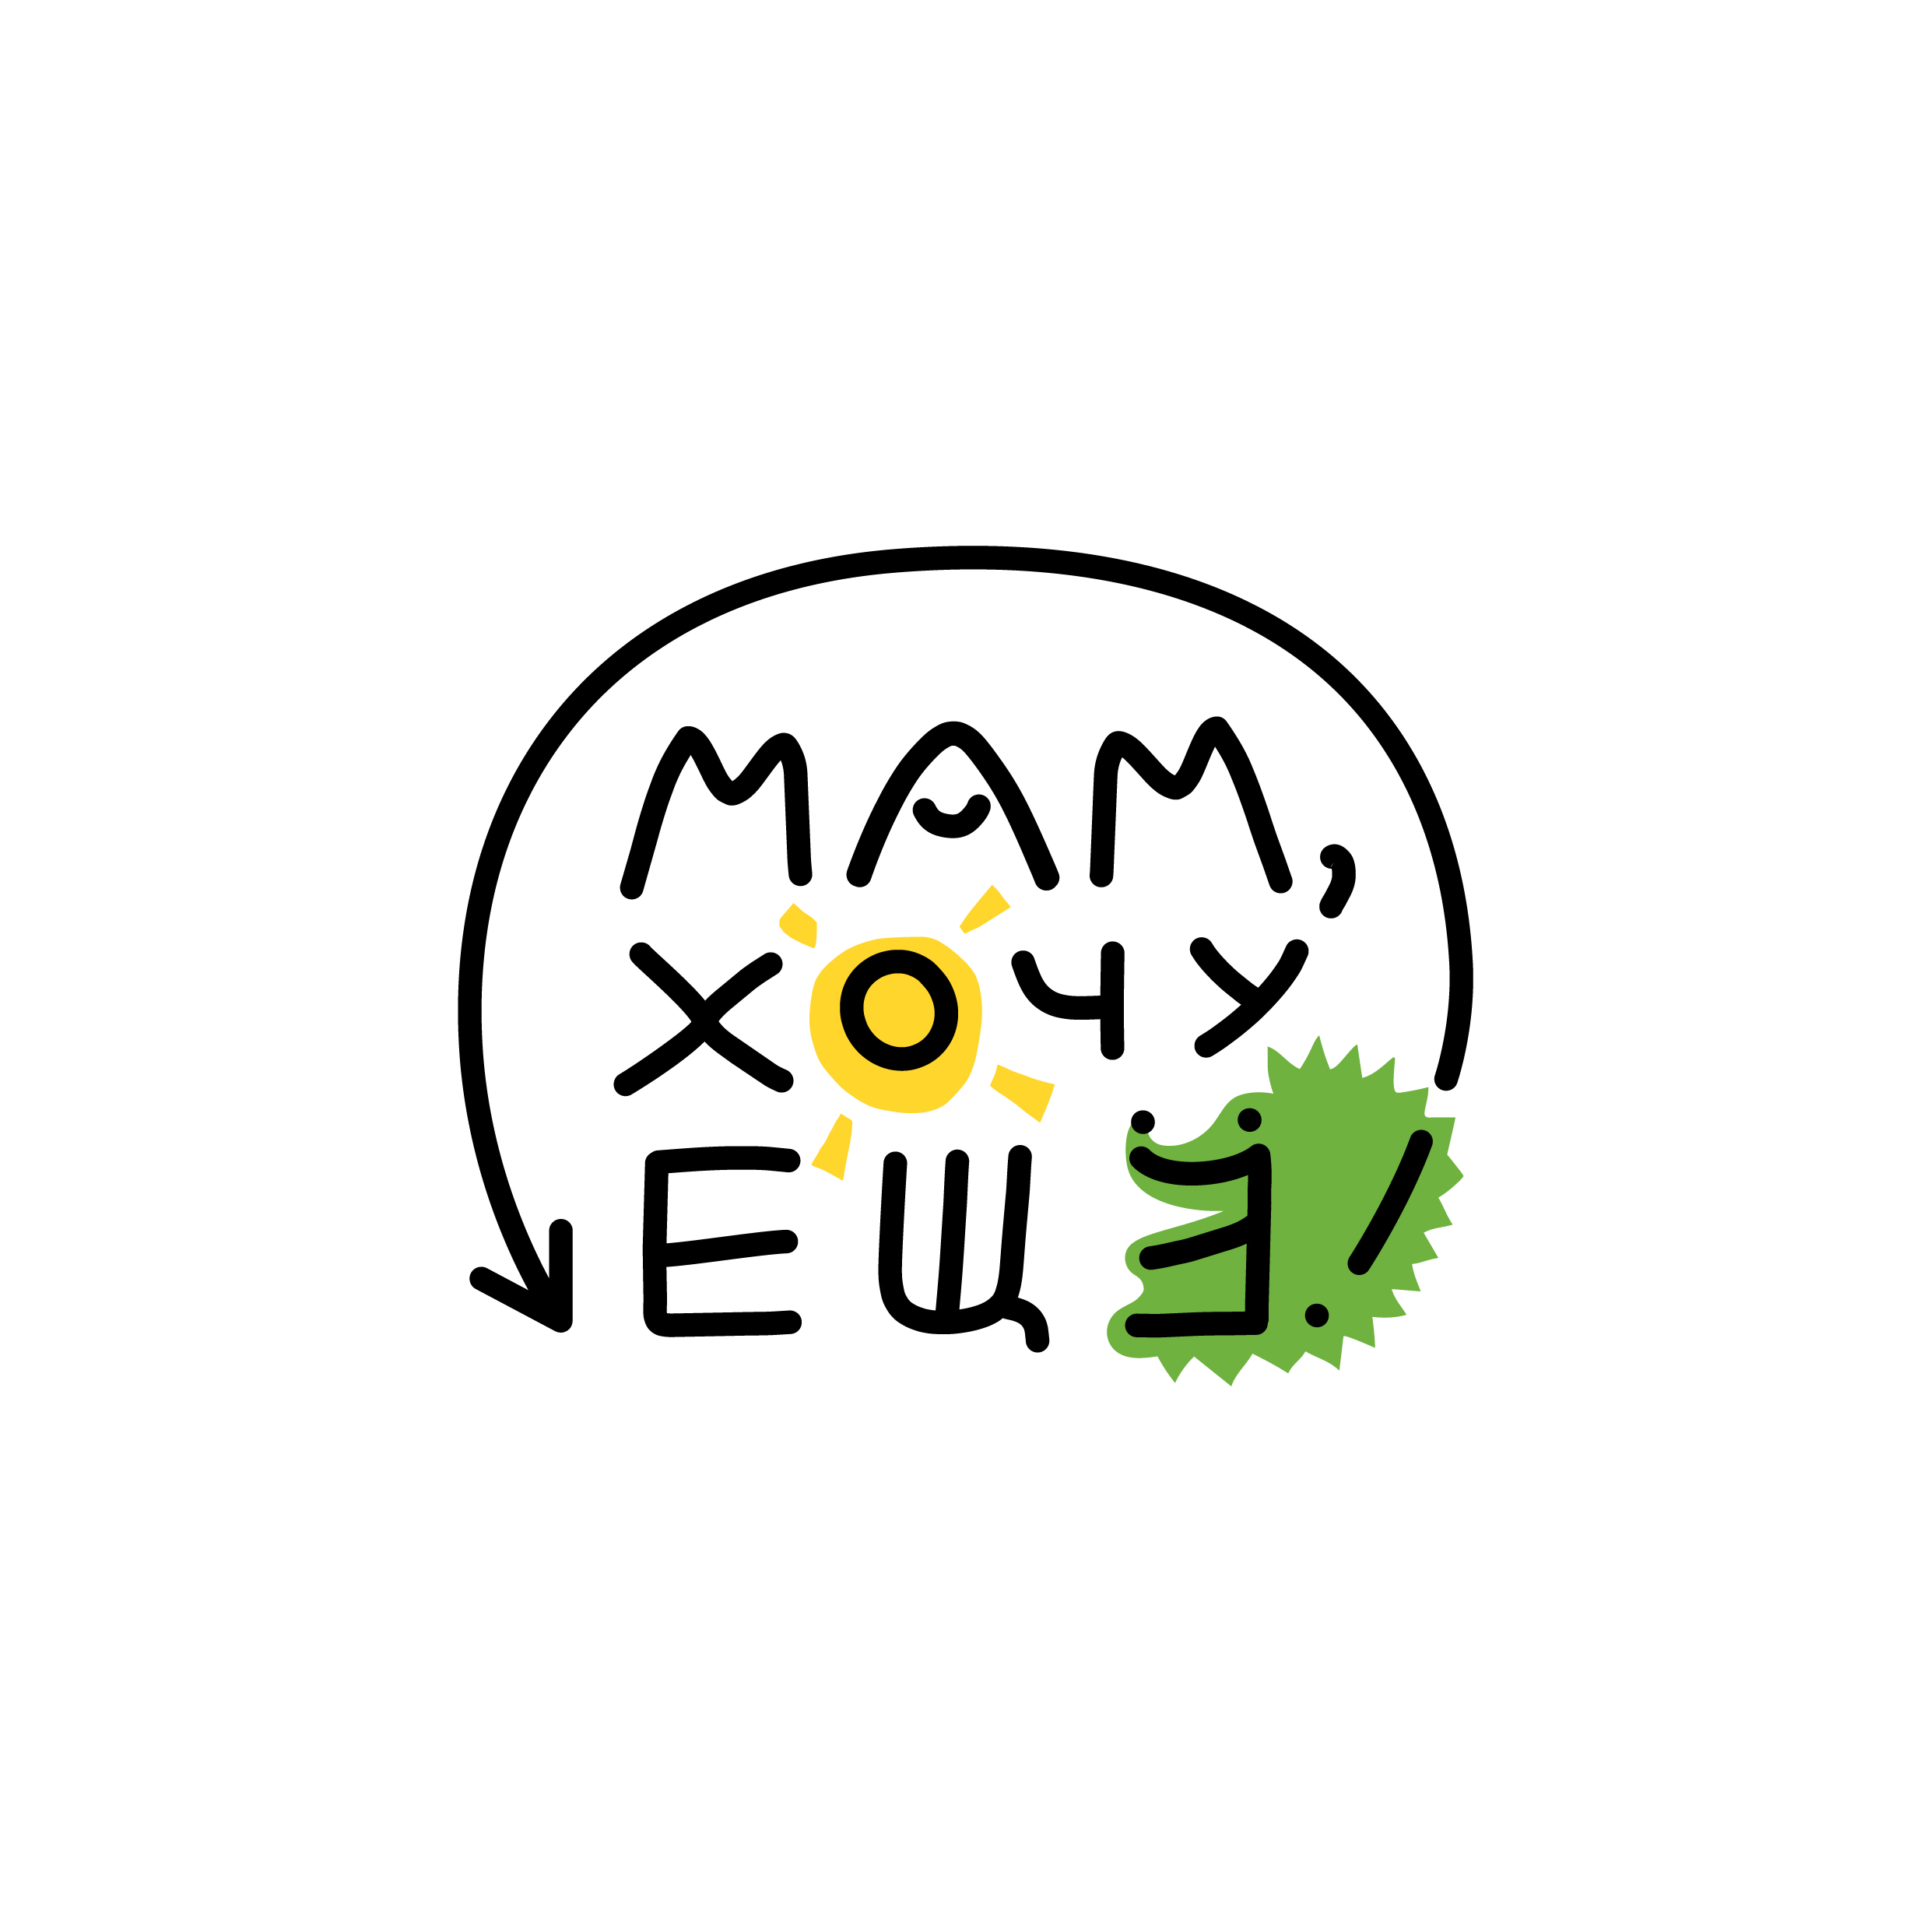 Лого: Место впечатлений «Мам, хочу ещё!»